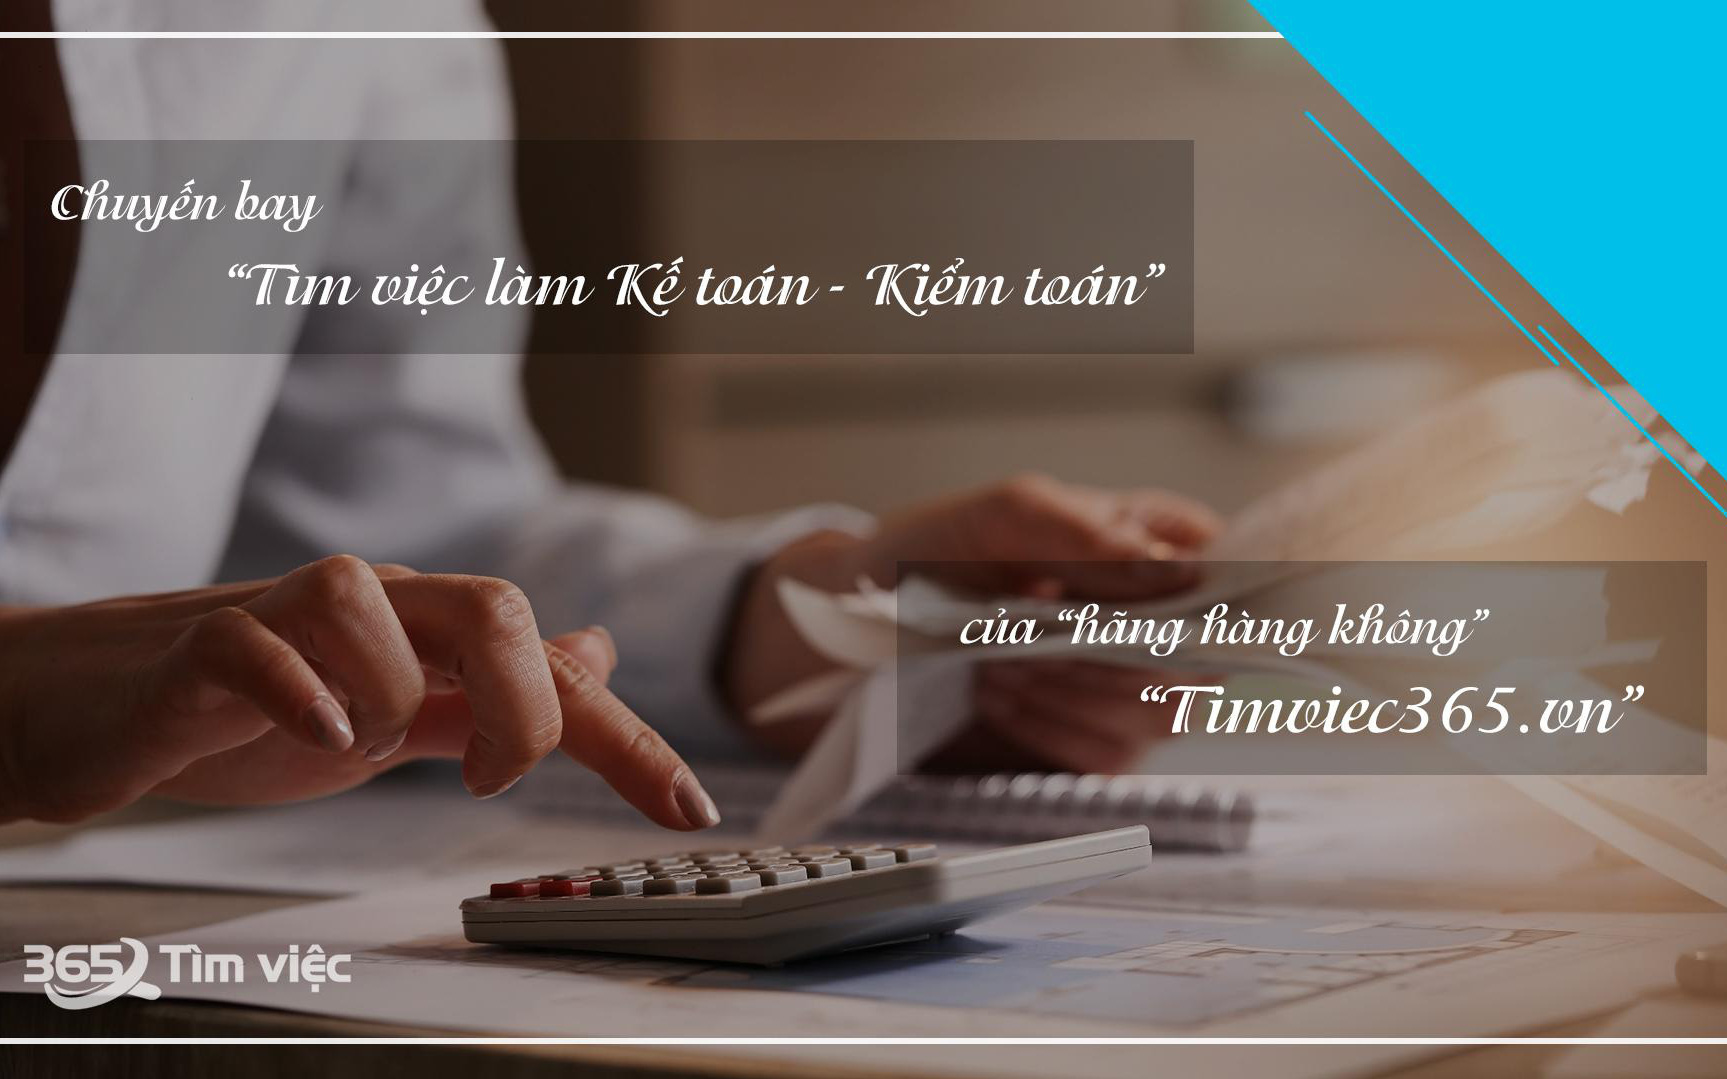 Website timviec365.vn – điểm đến tin cậy cho người tìm việc làm kế toán, kiểm toán